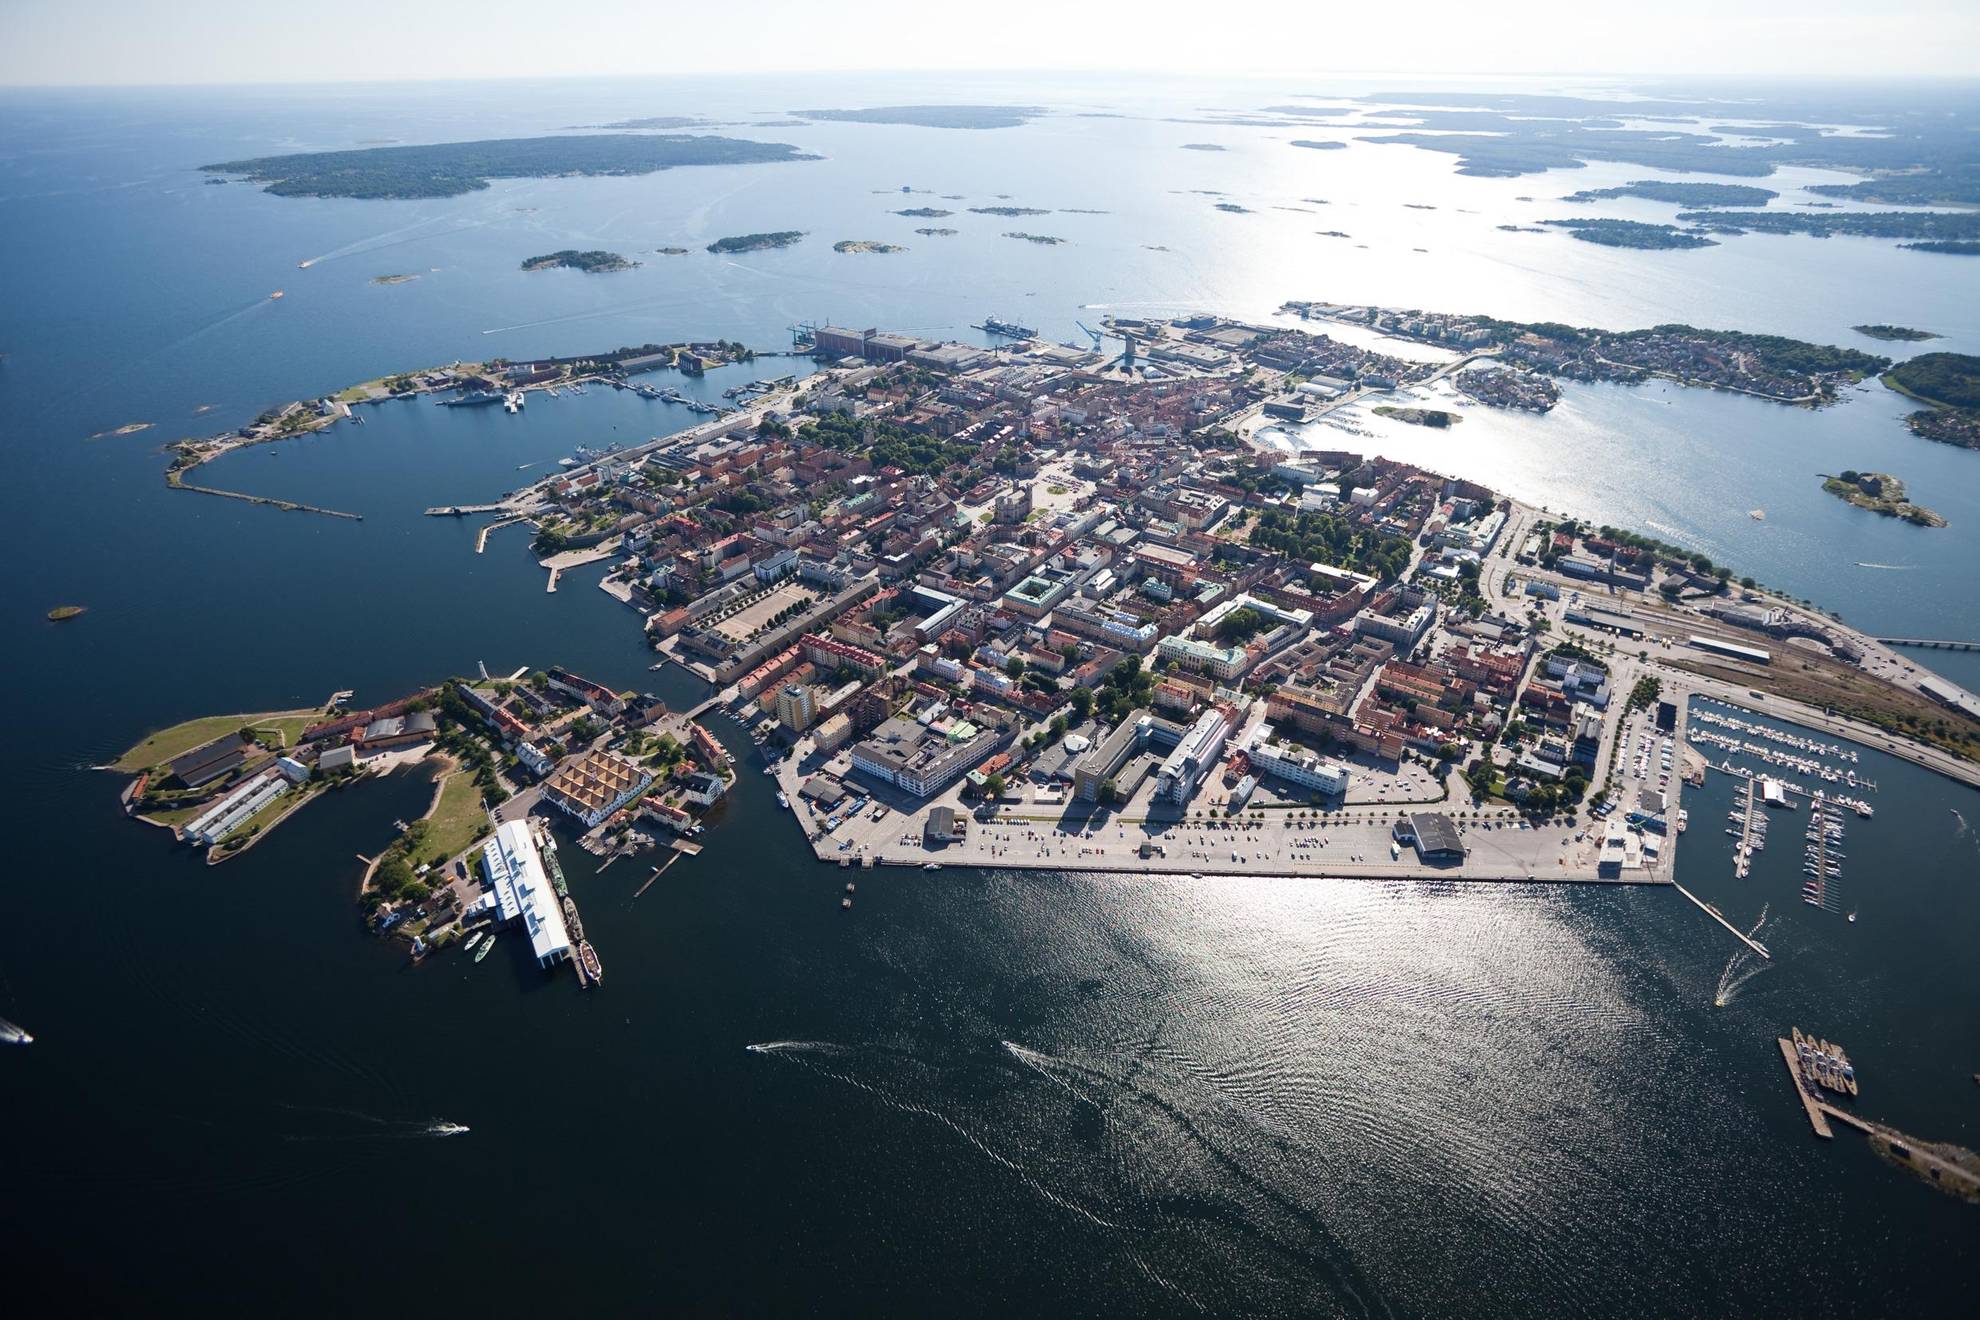 Luchtfoto van de archipel van Karlskrona.